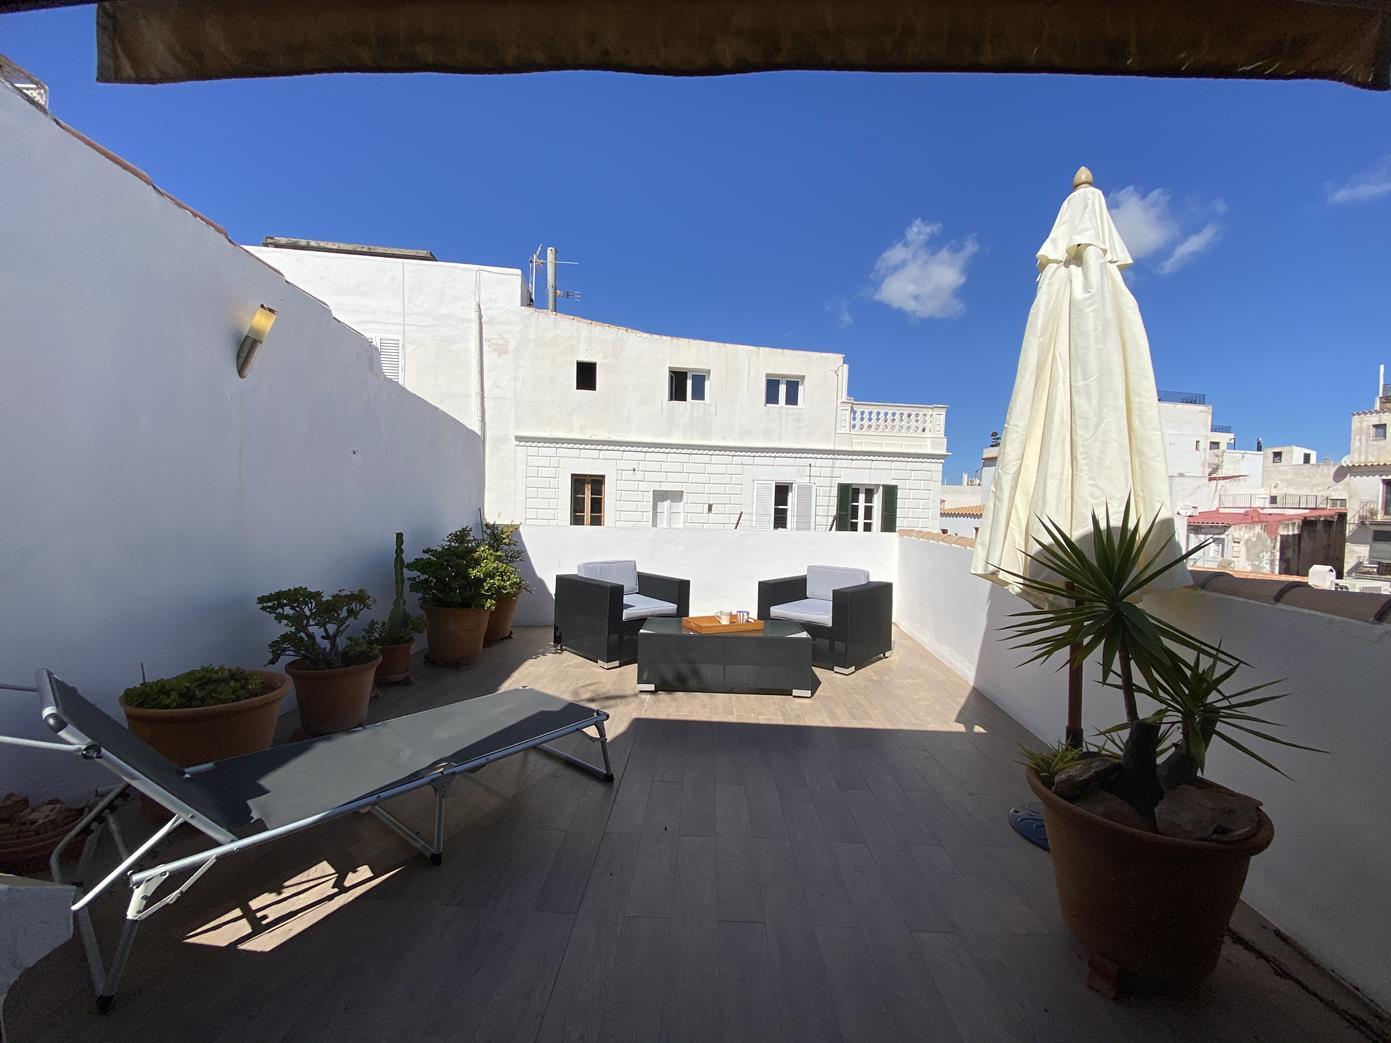 Duplex in de haven van Ibiza